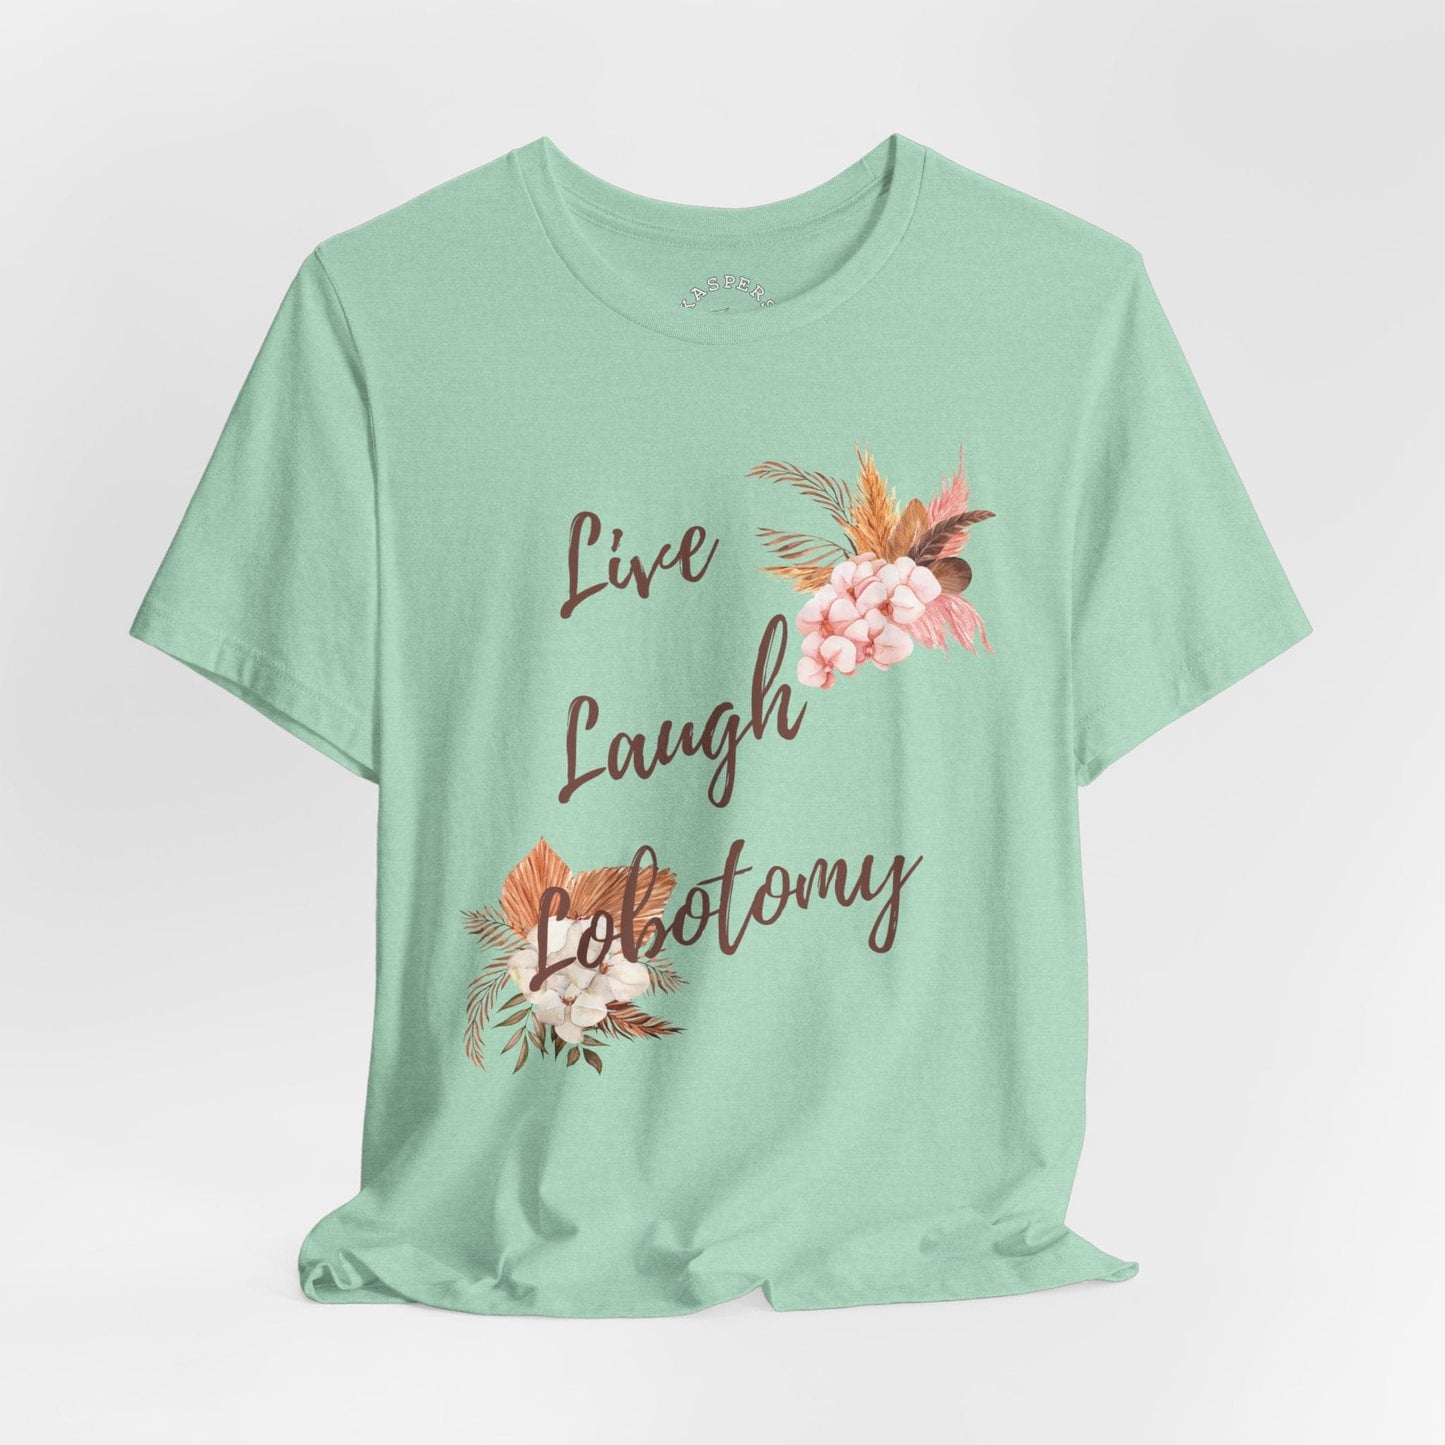 Live Laugh Lobotomy T-Shirt